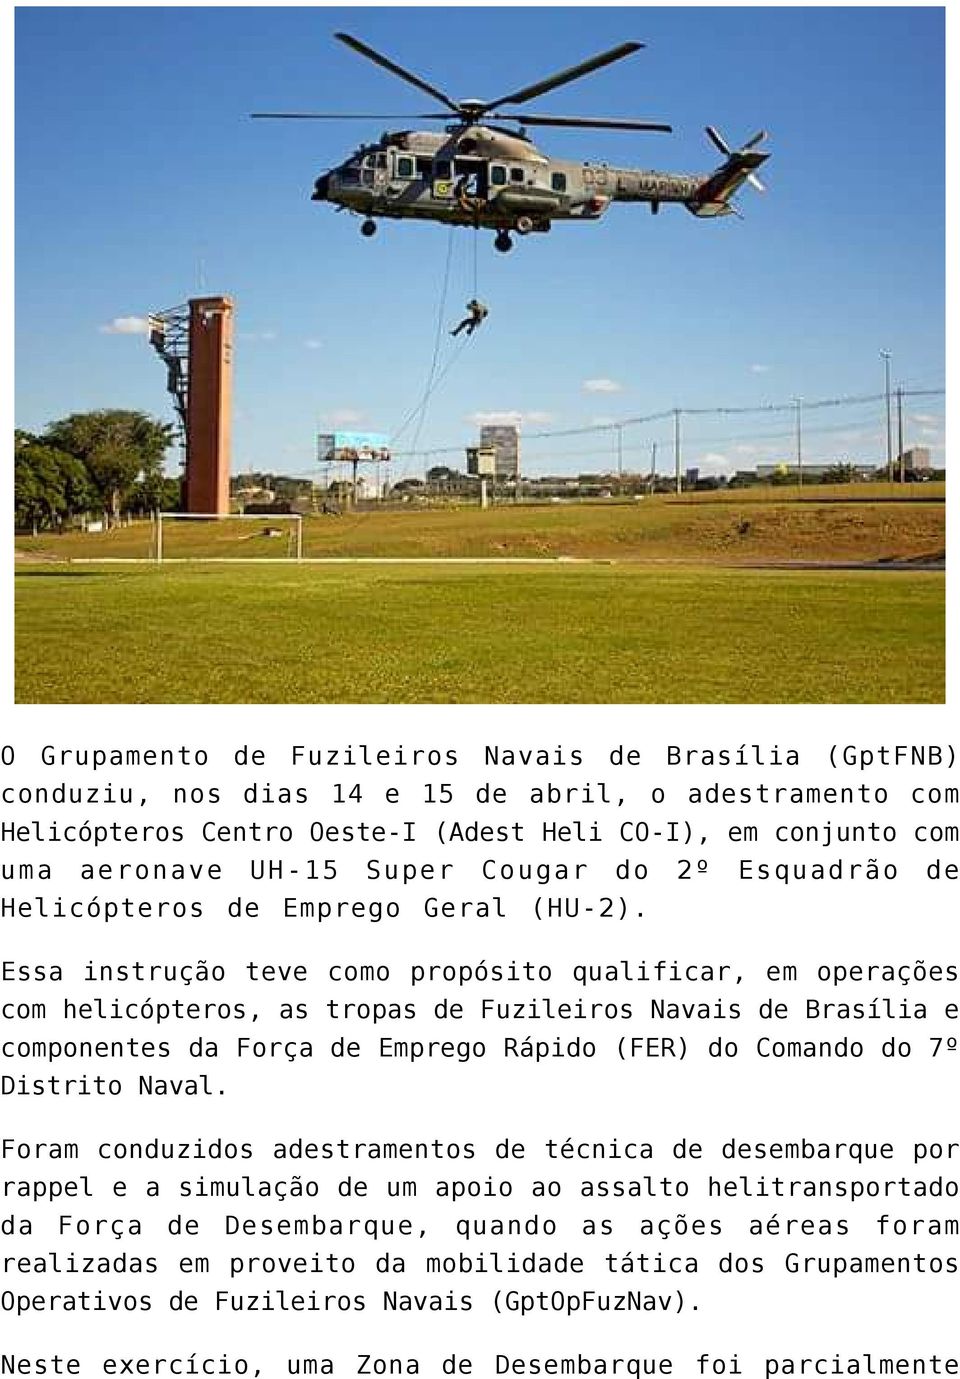 Essa instrução teve como propósito qualificar, em operações com helicópteros, as tropas de Fuzileiros Navais de Brasília e componentes da Força de Emprego Rápido (FER) do Comando do 7º Distrito Naval.